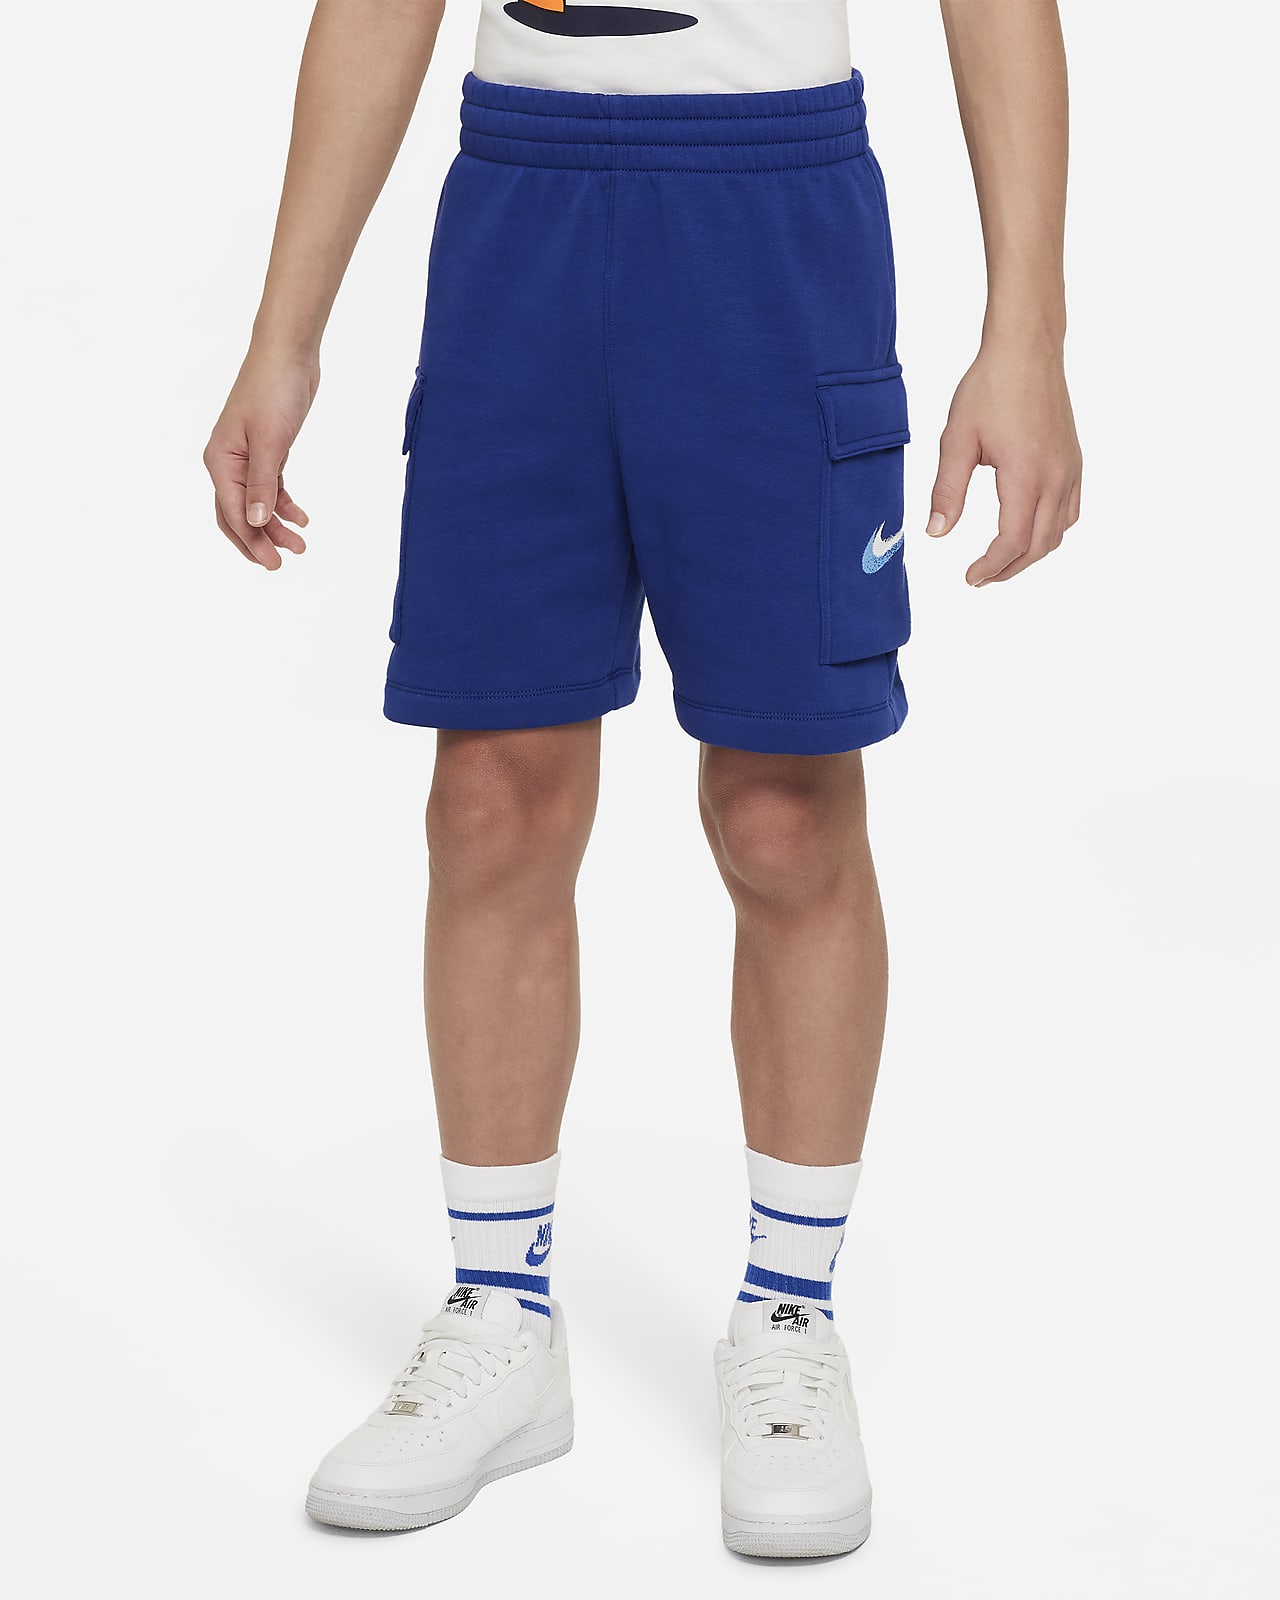 Nike Sportswear Standard Issue Older Kids' (Boys') Fleece Shorts